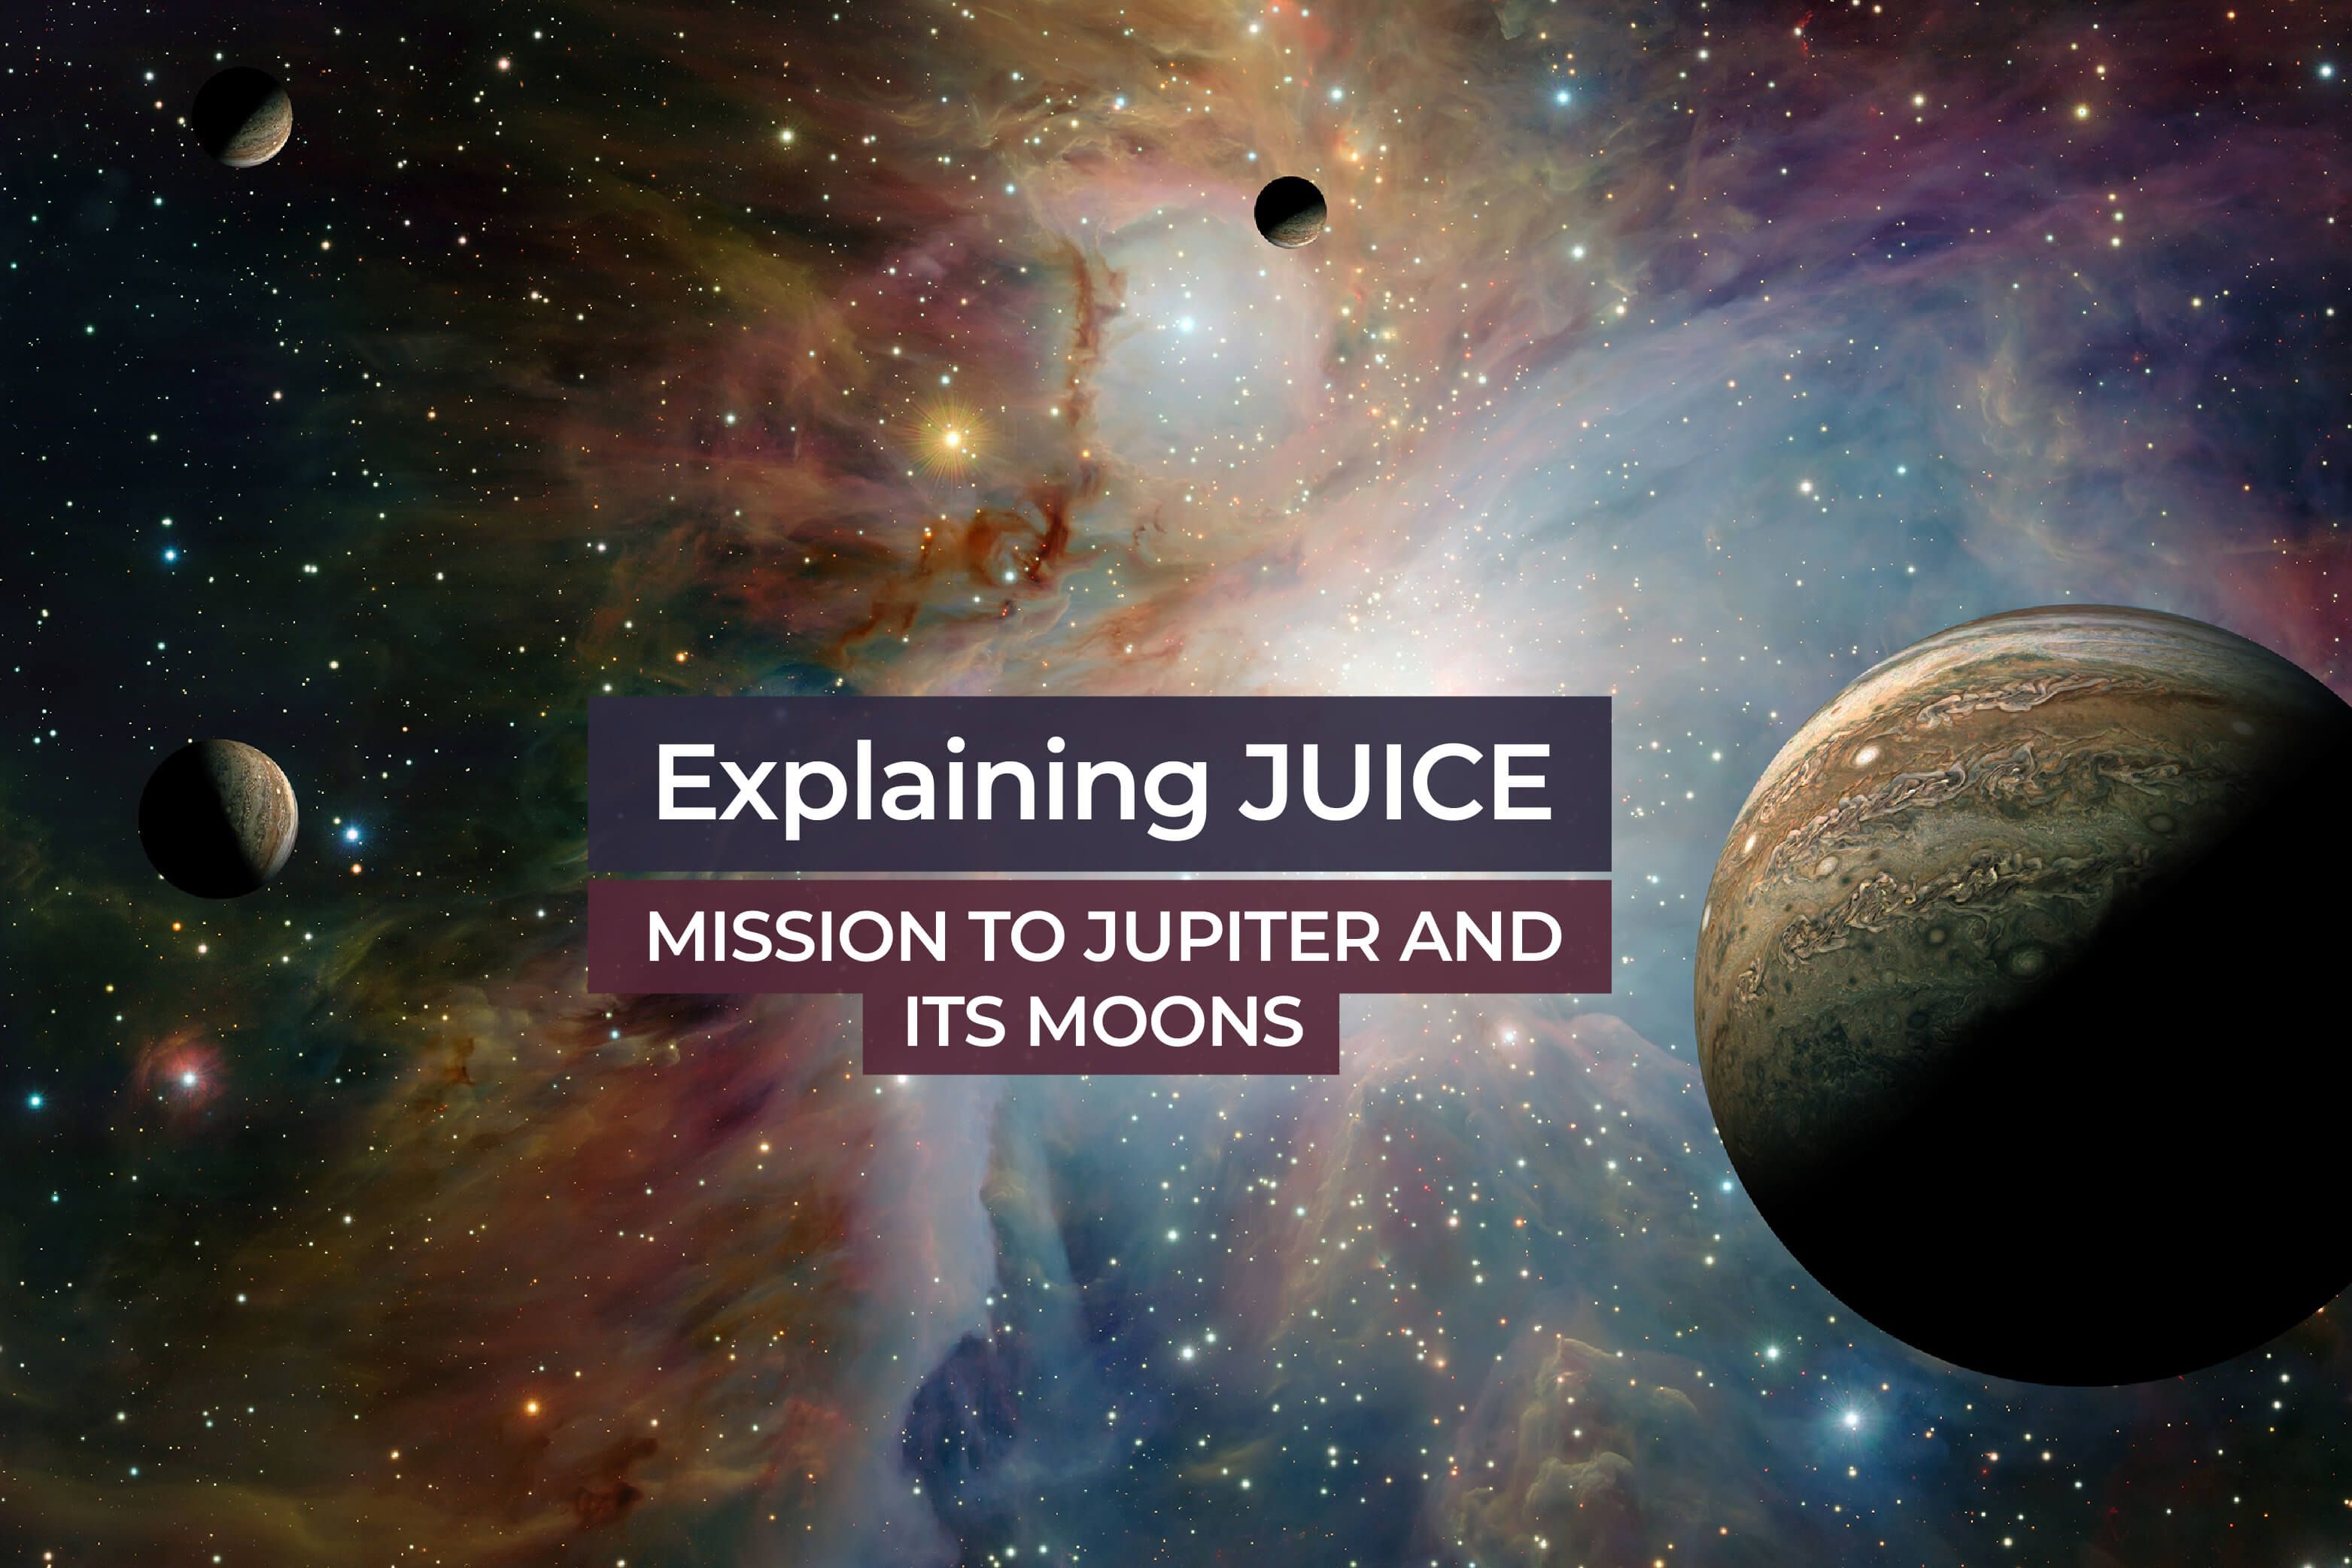 juice travel to jupiter